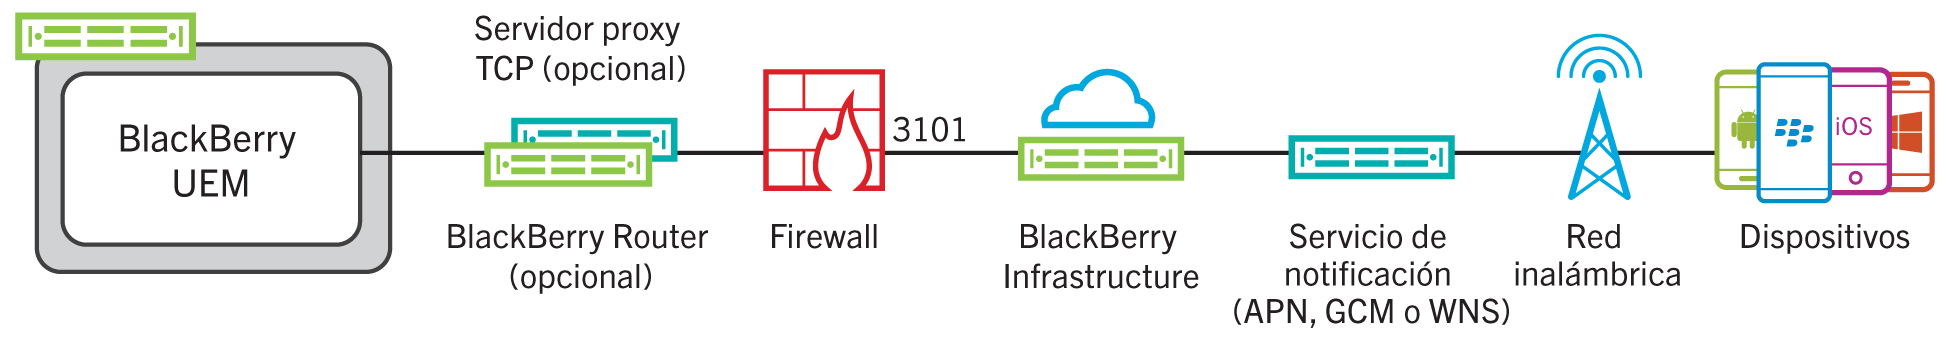 En este diagrama se muestra cómo BlackBerry UEM se conecta a BlackBerry Infrastructure a través del puerto 3101